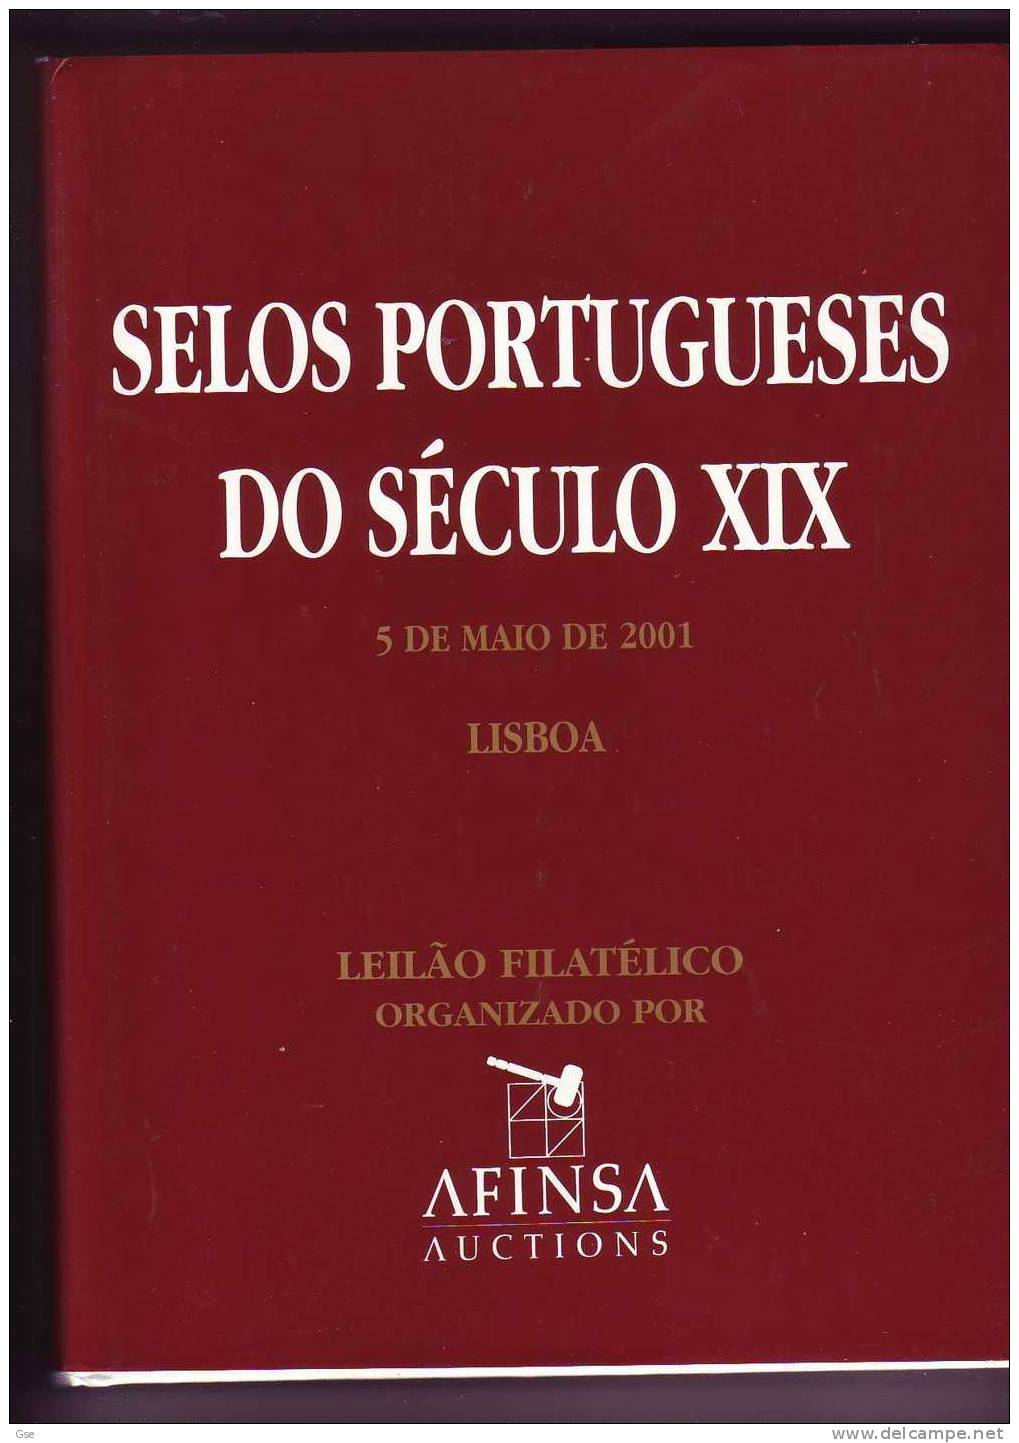 SELOS PORTUGUESES DO  SE'CULO  XIX -  AFINSA Auctions - Catalogues For Auction Houses